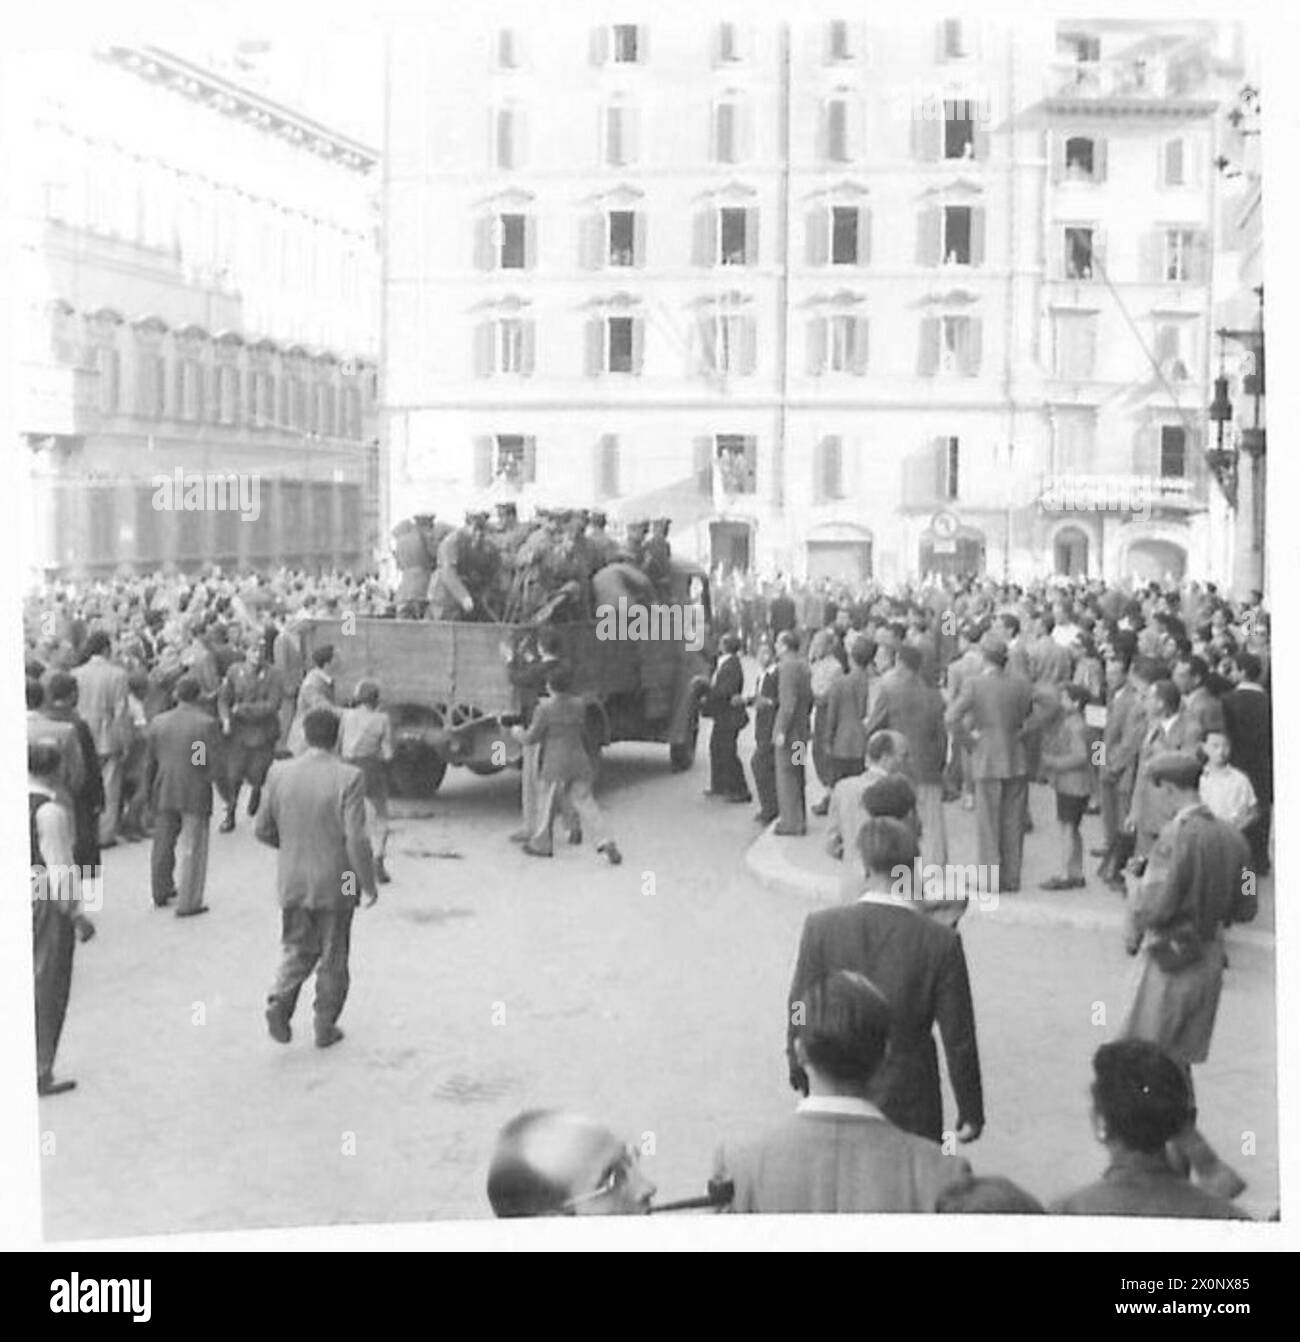 ITALIEN : SZENEN, IN DENEN ROM SICH DER FÜNFTEN ARMEE UNTERWIRFT - in diesem Gebäude haben sich die Faschisten vor der rasenden Menge geflüchtet, die die Türen zwang, in das Gebäude eindrang und Gewehre und Revolver feuerte. Fotografisches negativ, britische Armee Stockfoto